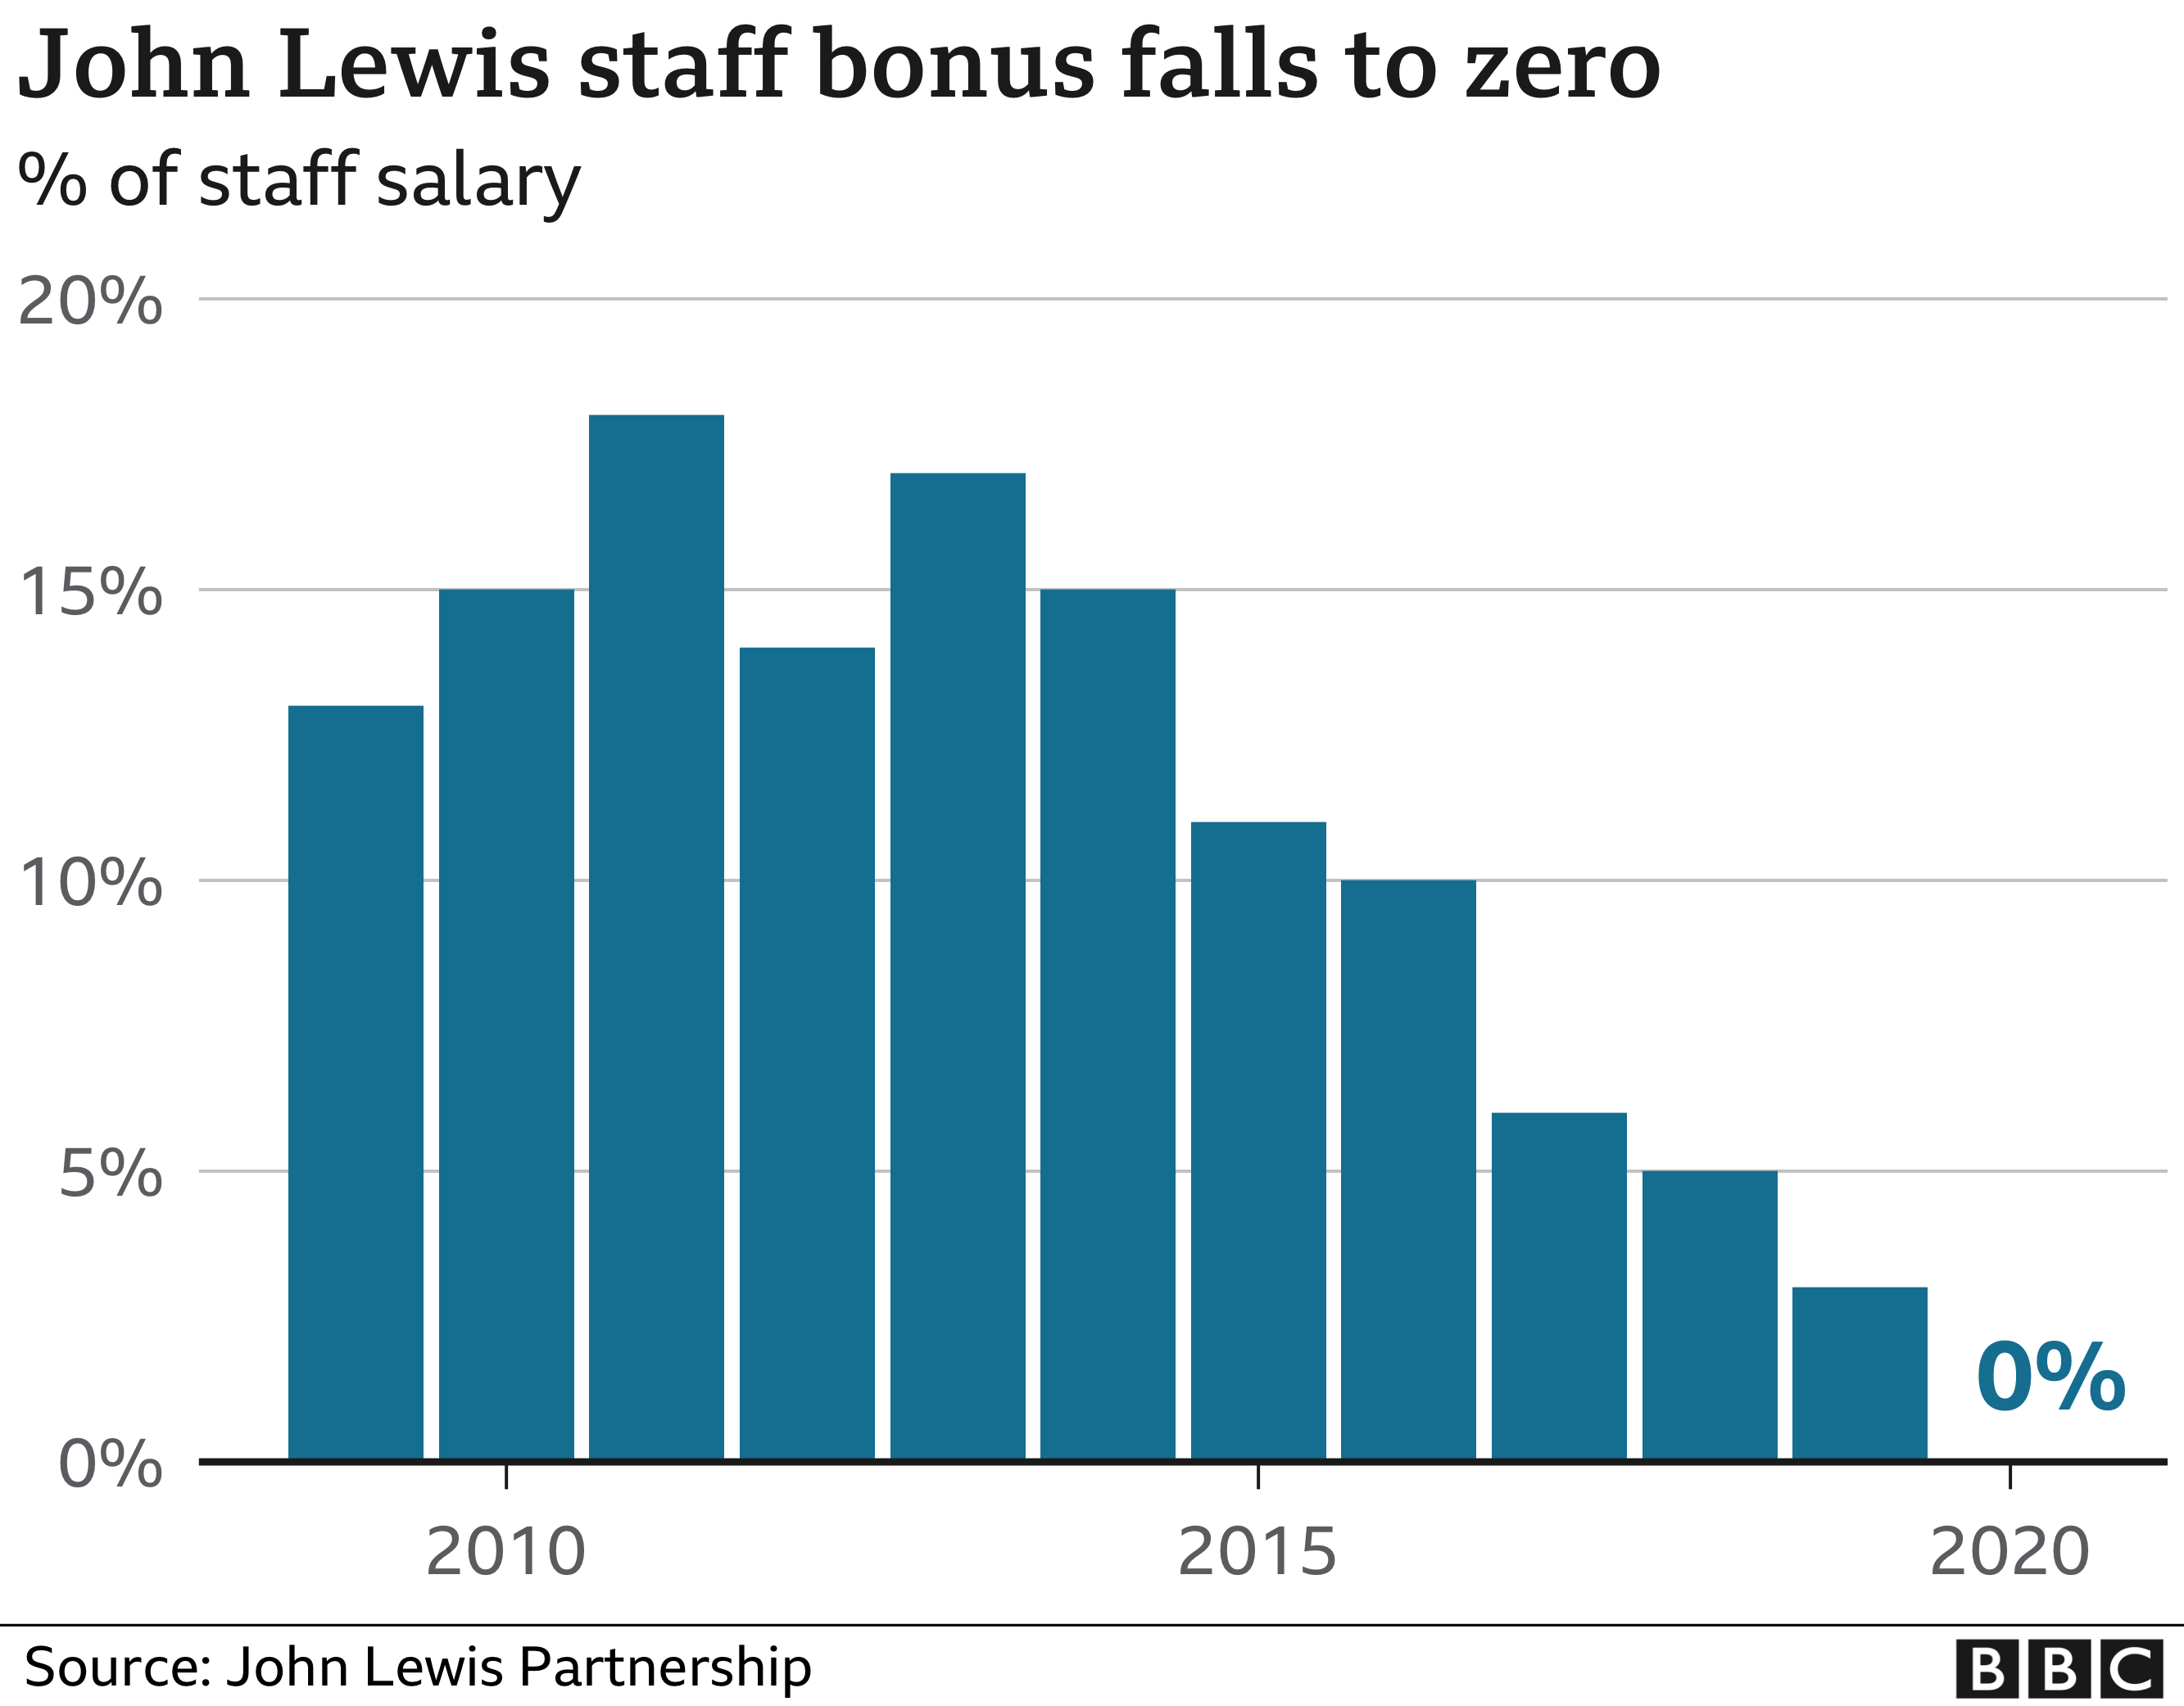 John Lewis staff bonus falls to 0 - enlarge